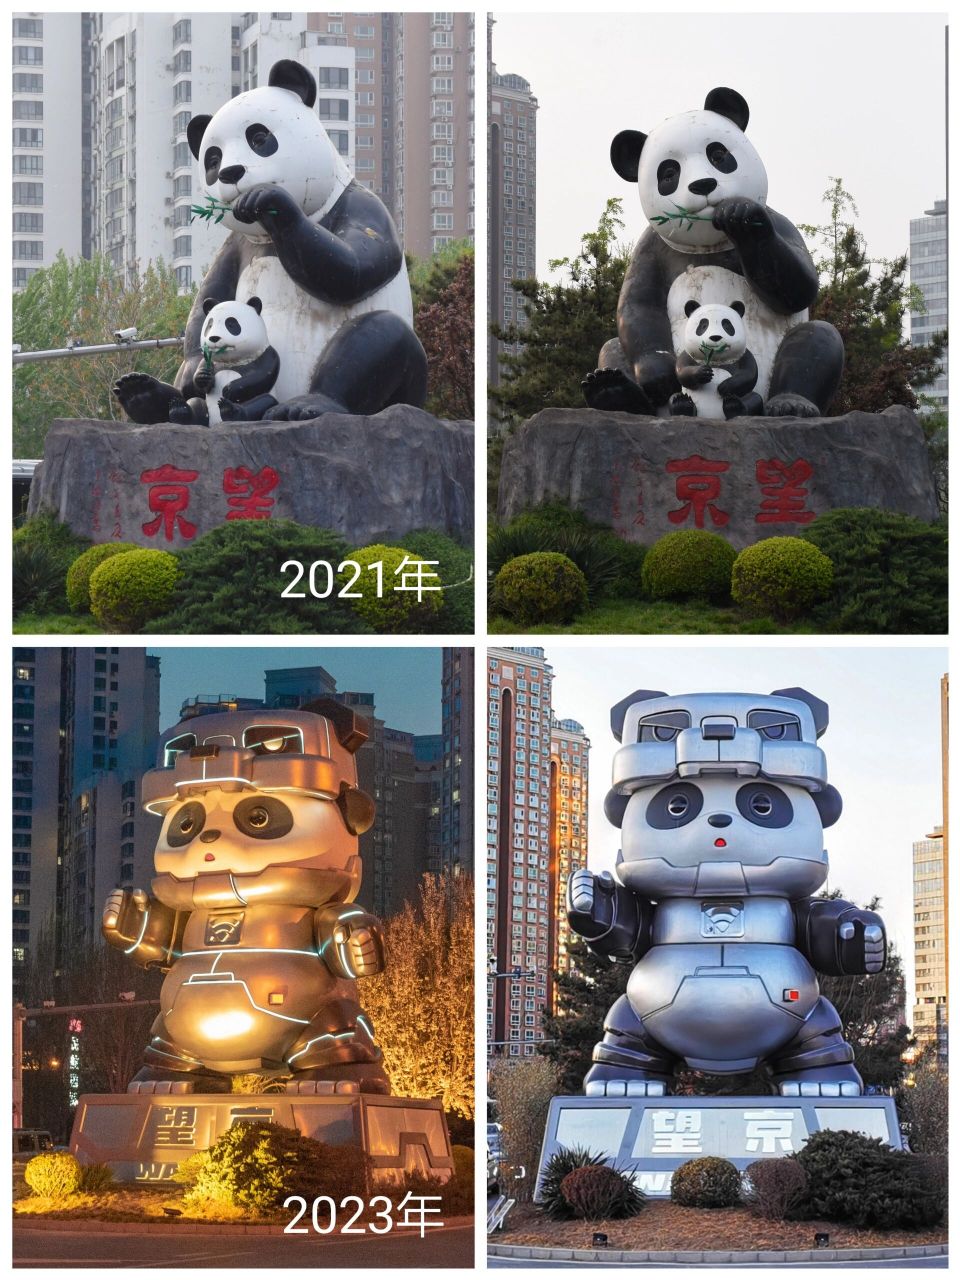 时隔两年,熊猫变老了  在北京望京南地铁站旁边,有一个熊猫雕塑,去